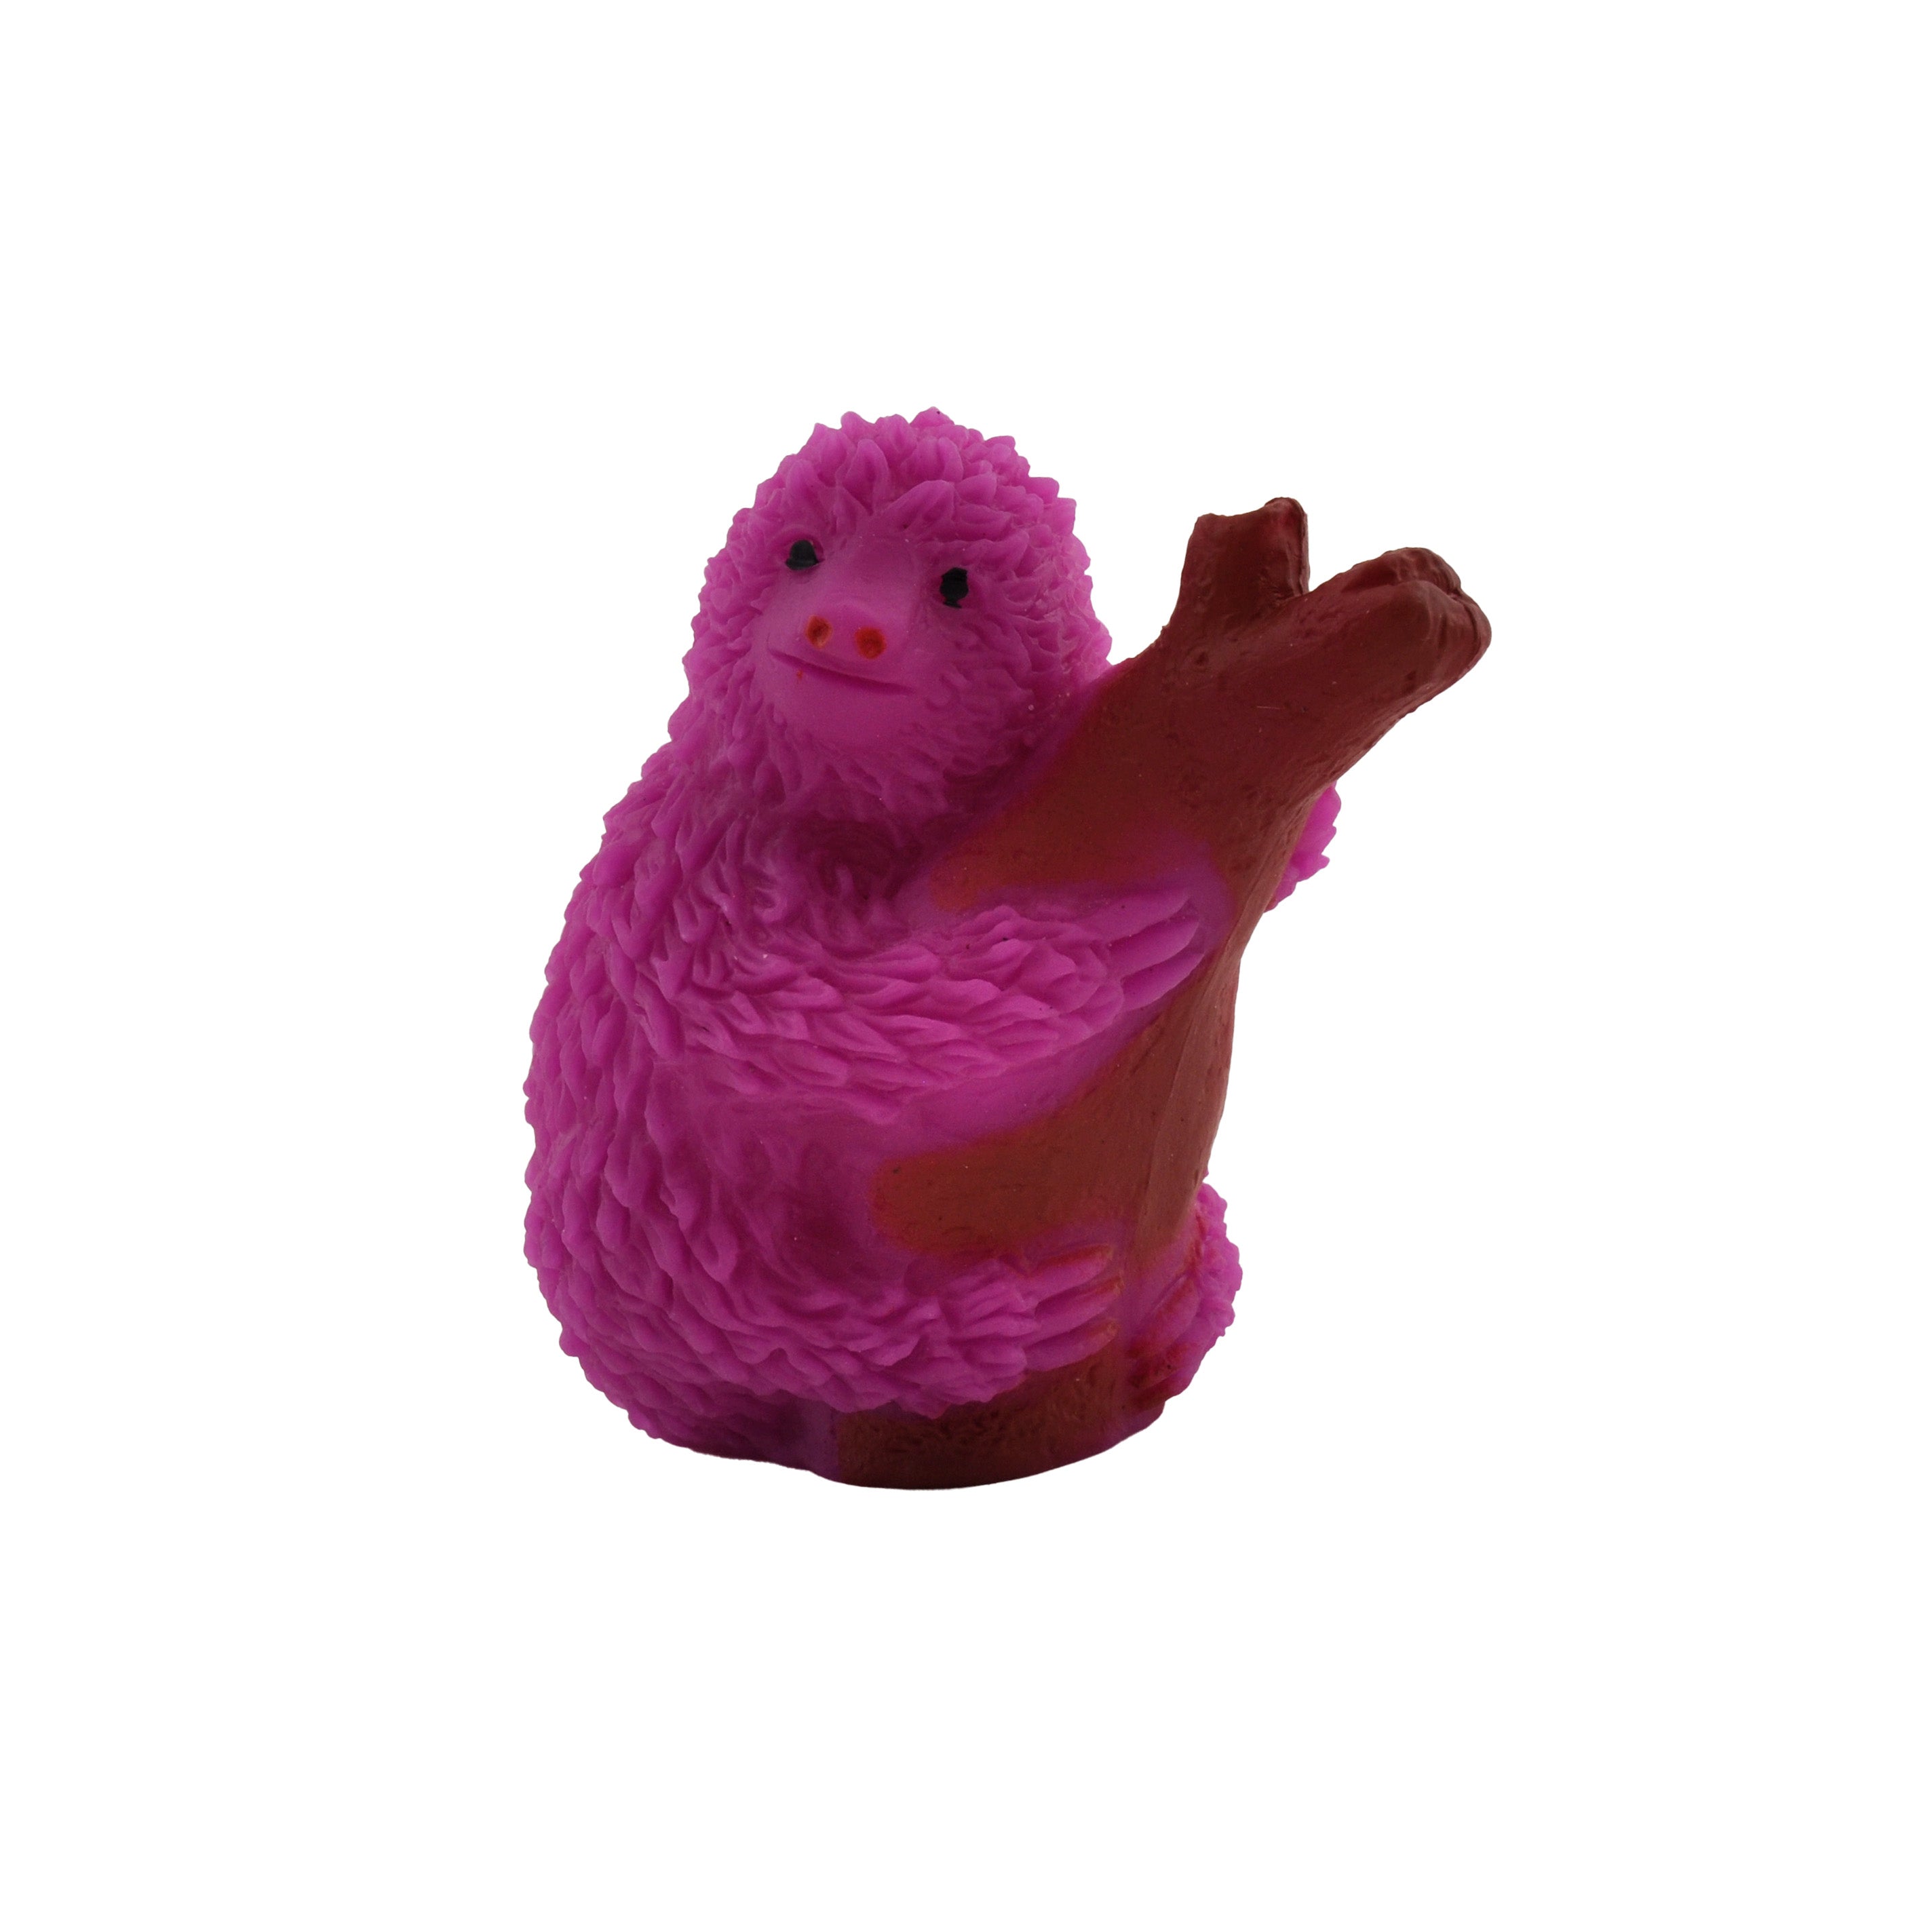 Squishy Sloth - Purple